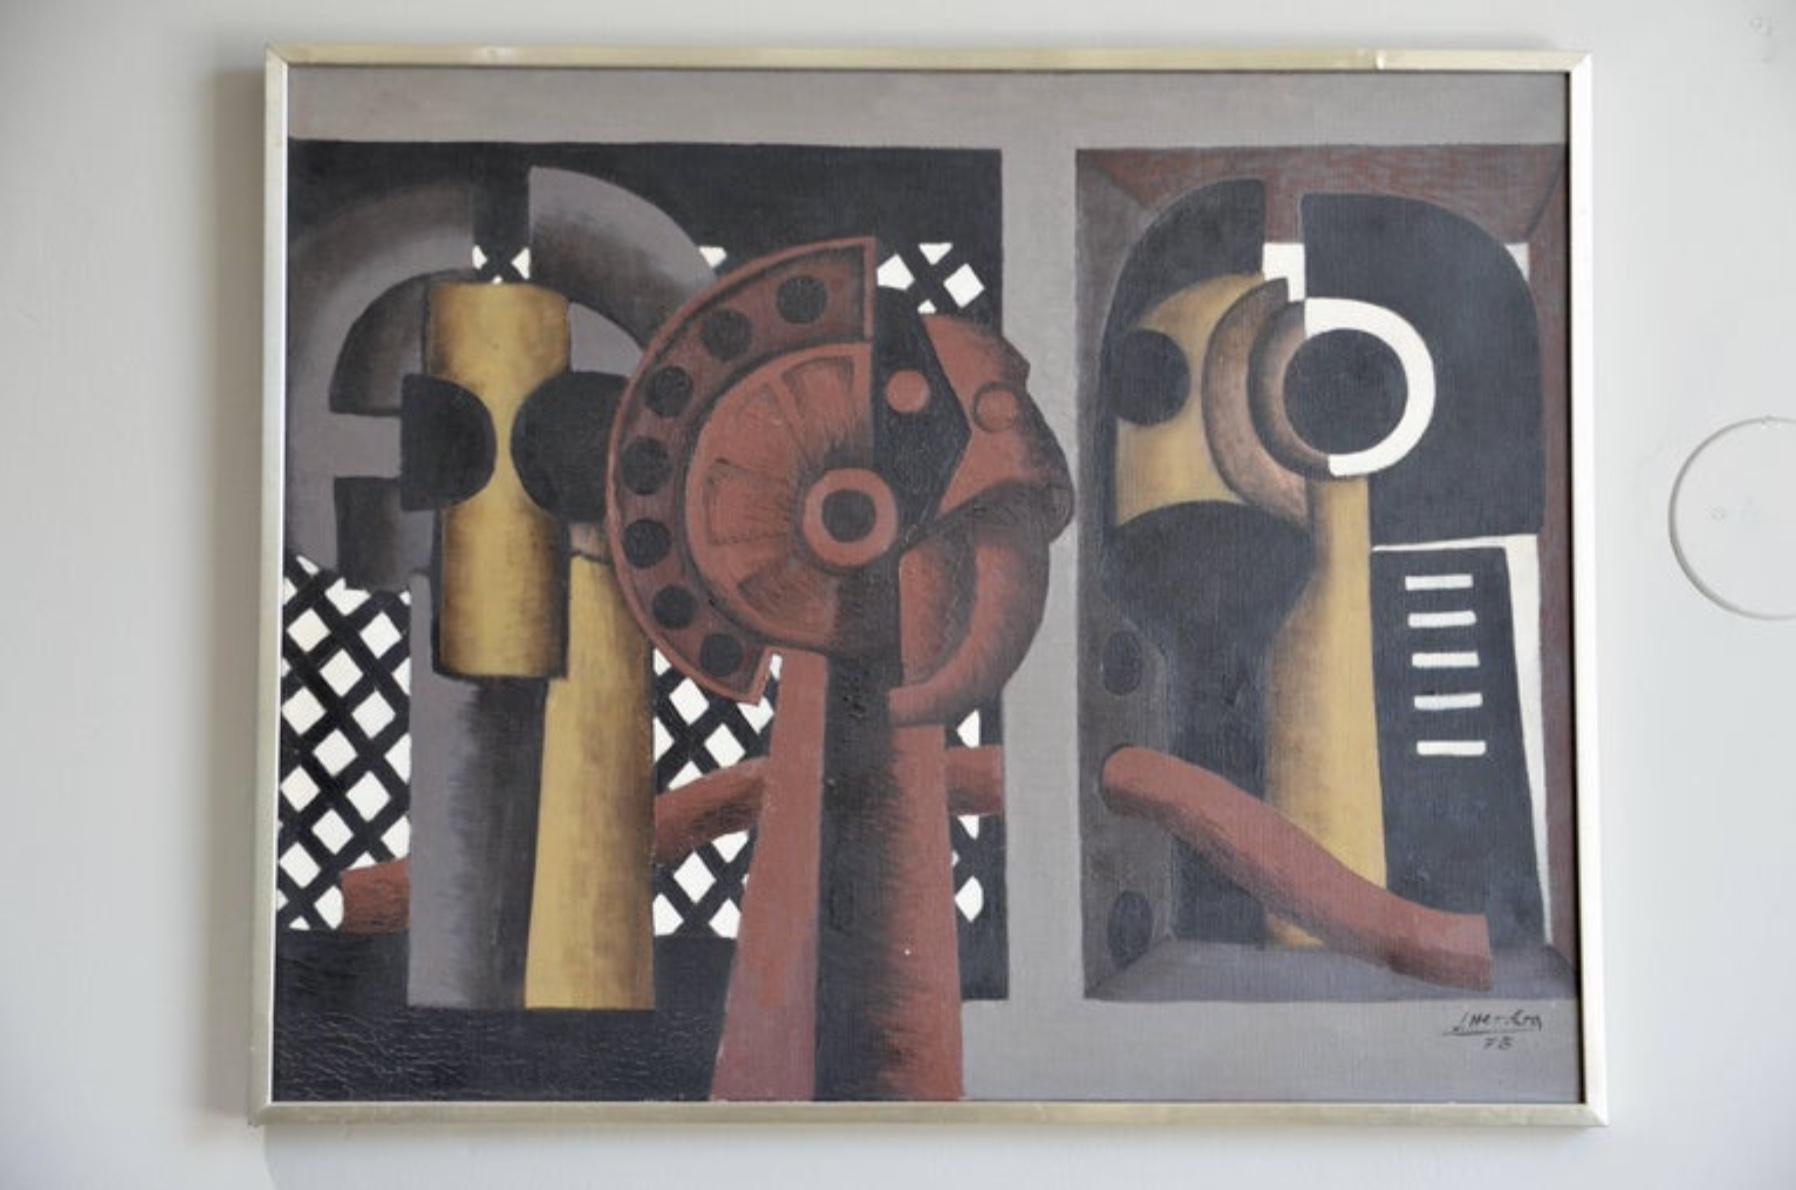 Öl auf Leinwand von José Herrera (Spanisch, 1943-).

Signiert und datiert 1973.

Originaler Rahmen aus rostfreiem Stahl.

Ein schönes Stück.